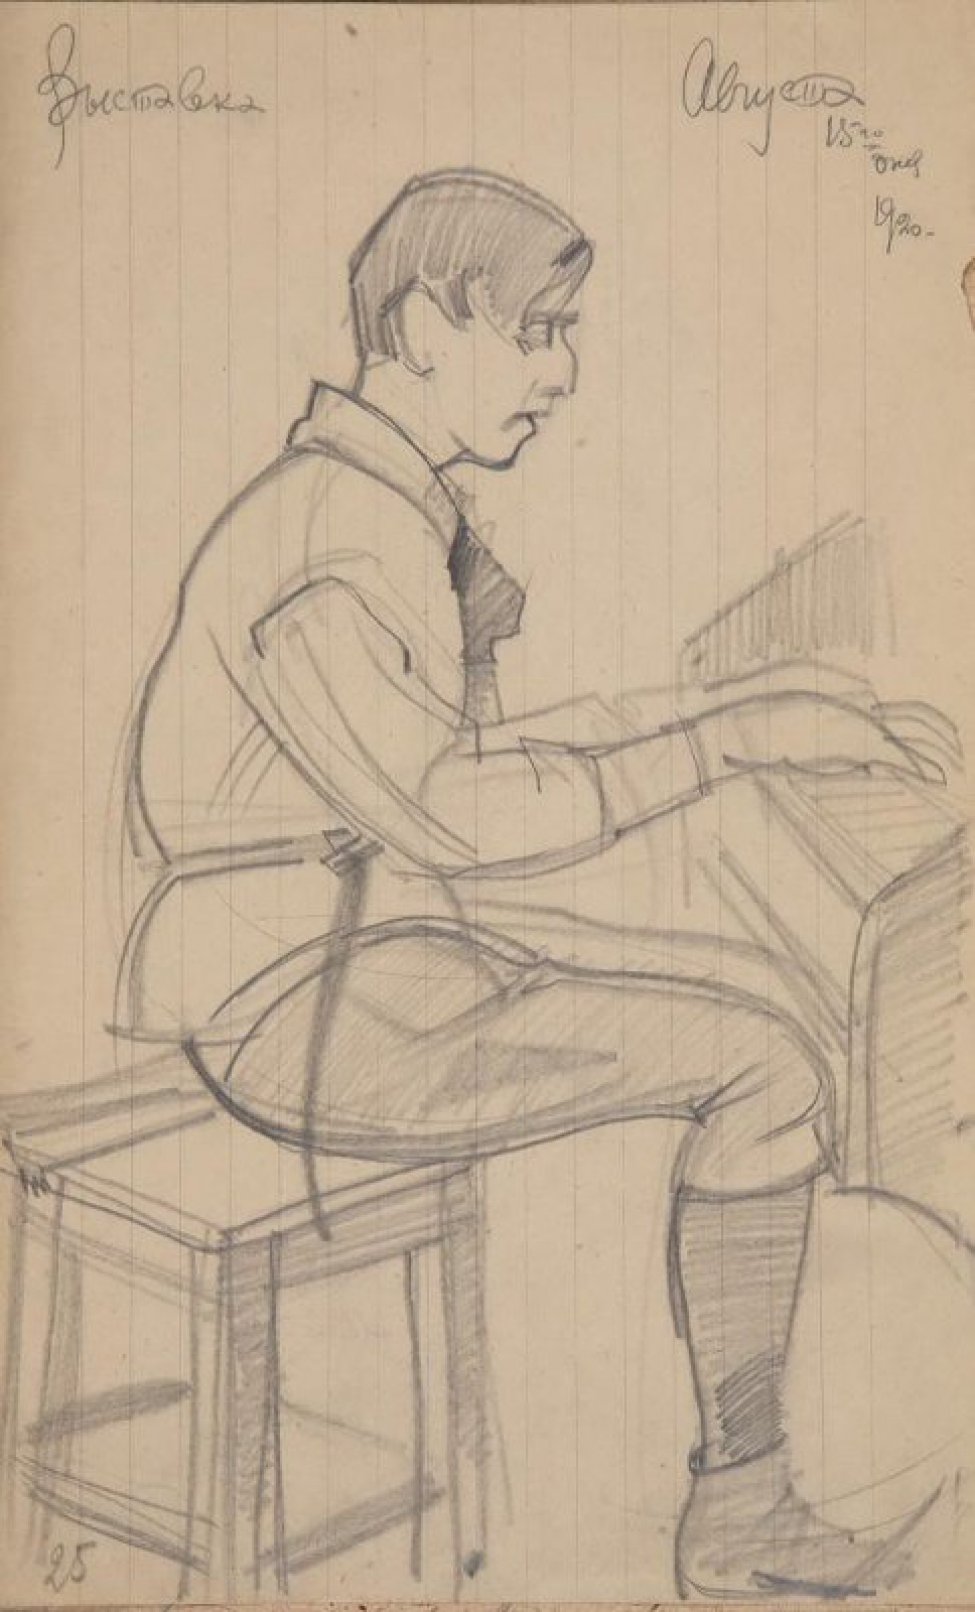 Изображен в правый профиль молодой мужчина, сидящий на табурете за роялем; у рояля изображены только клавиши.